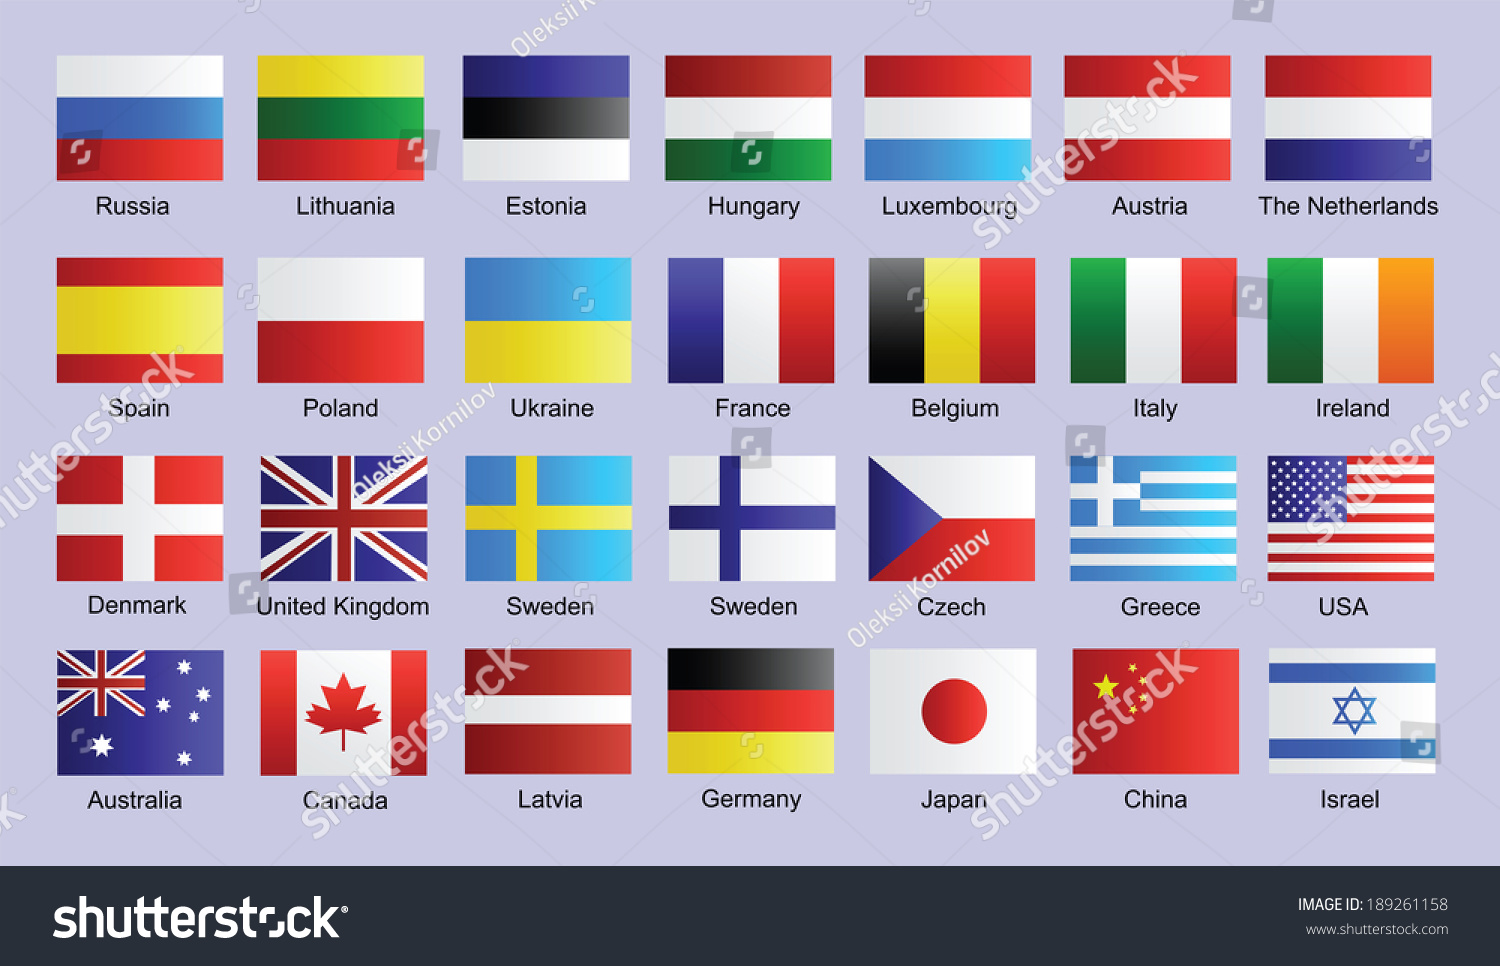 Флаги стран на английском языке с картинками